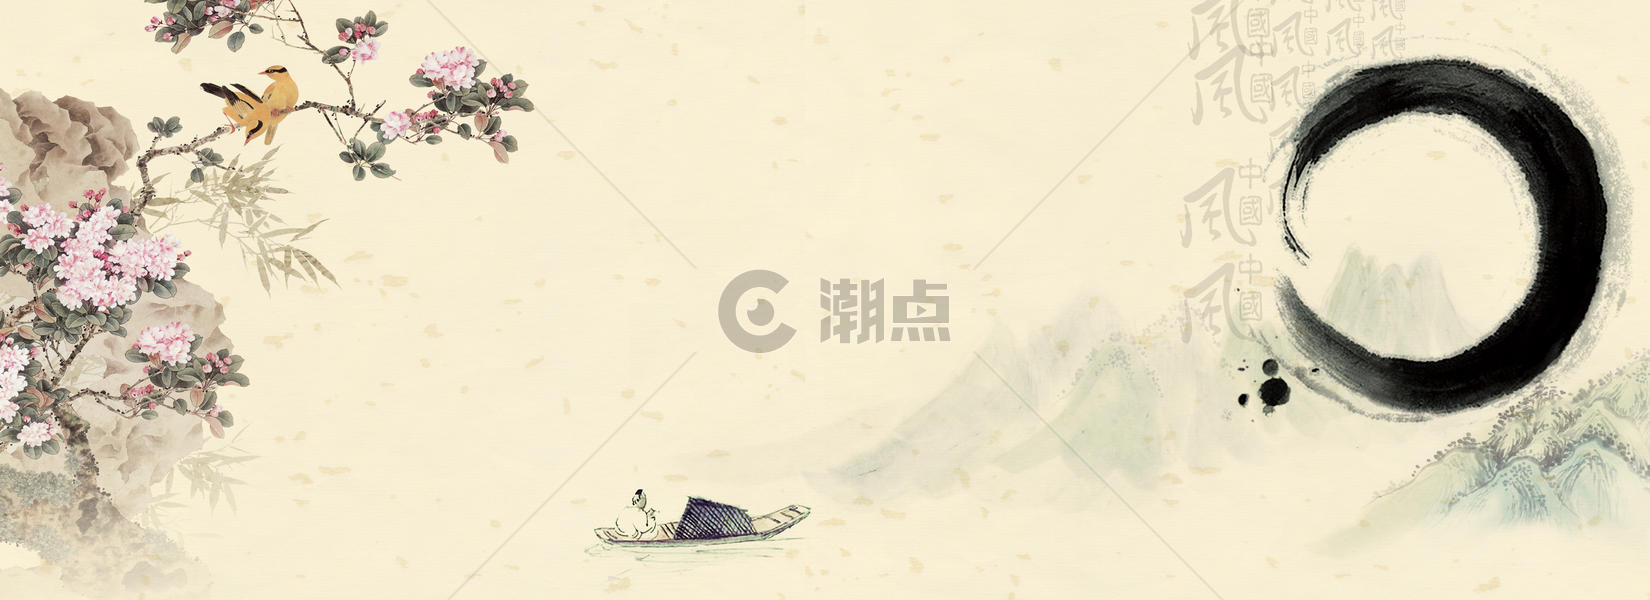 中国风背景图片素材免费下载